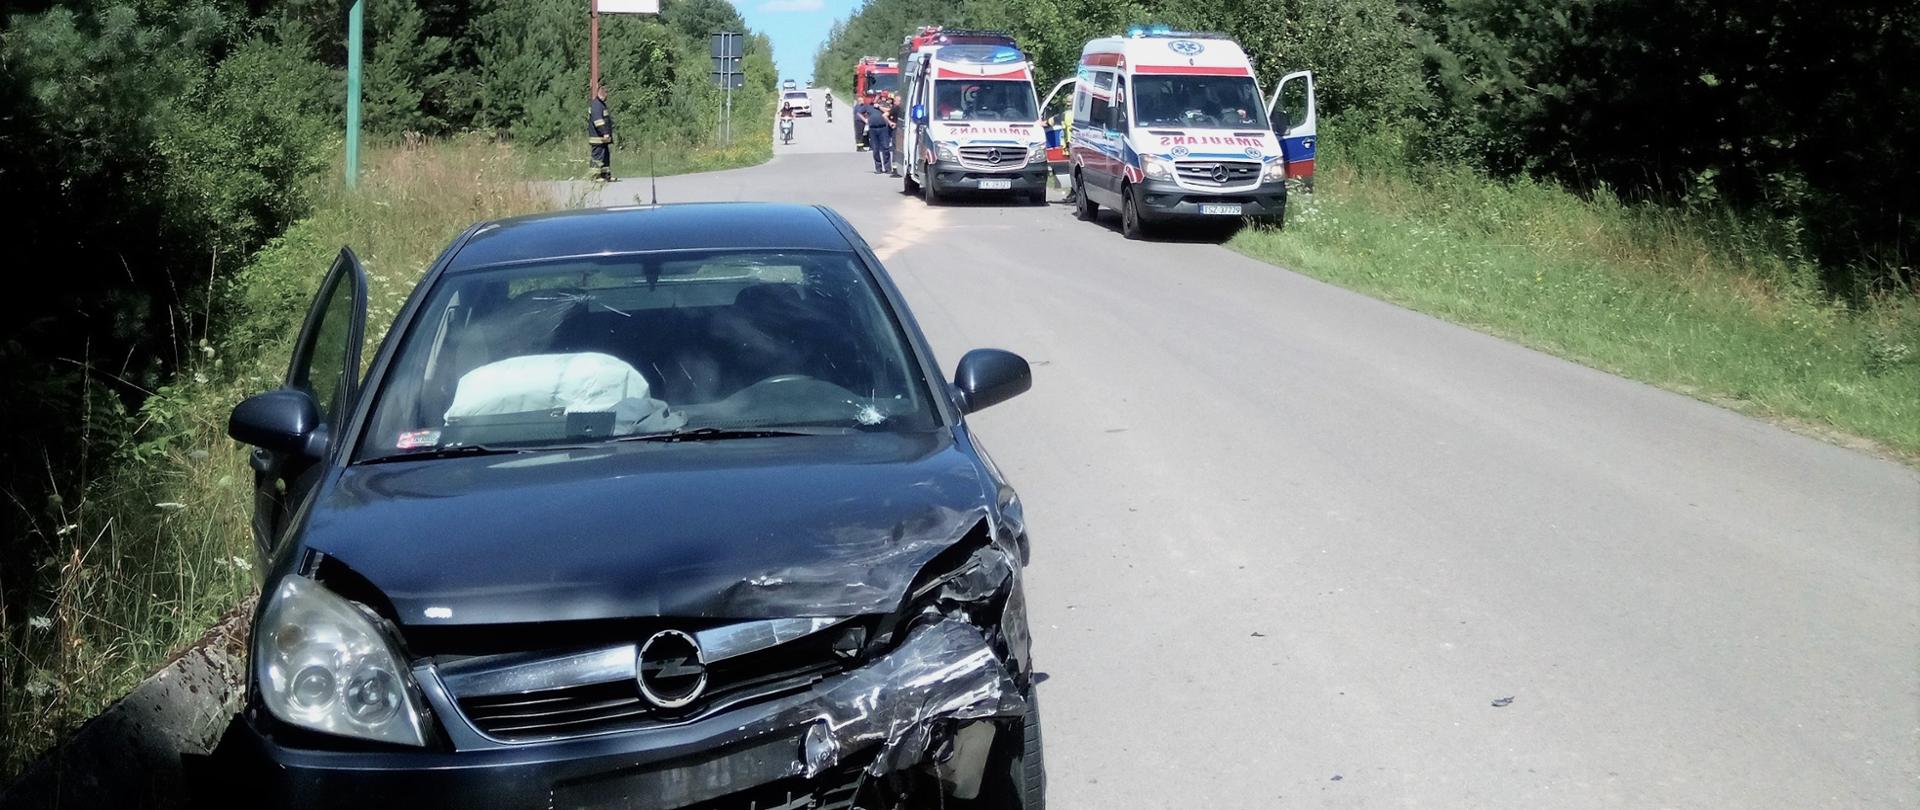 Zdjęcie przedstawia samochód osobowy, który uległy zderzeniu. W oddaleniu, na ulicy widać zaparkowane dwa ambulanse Państwowego Ratownictwa Medycznego.